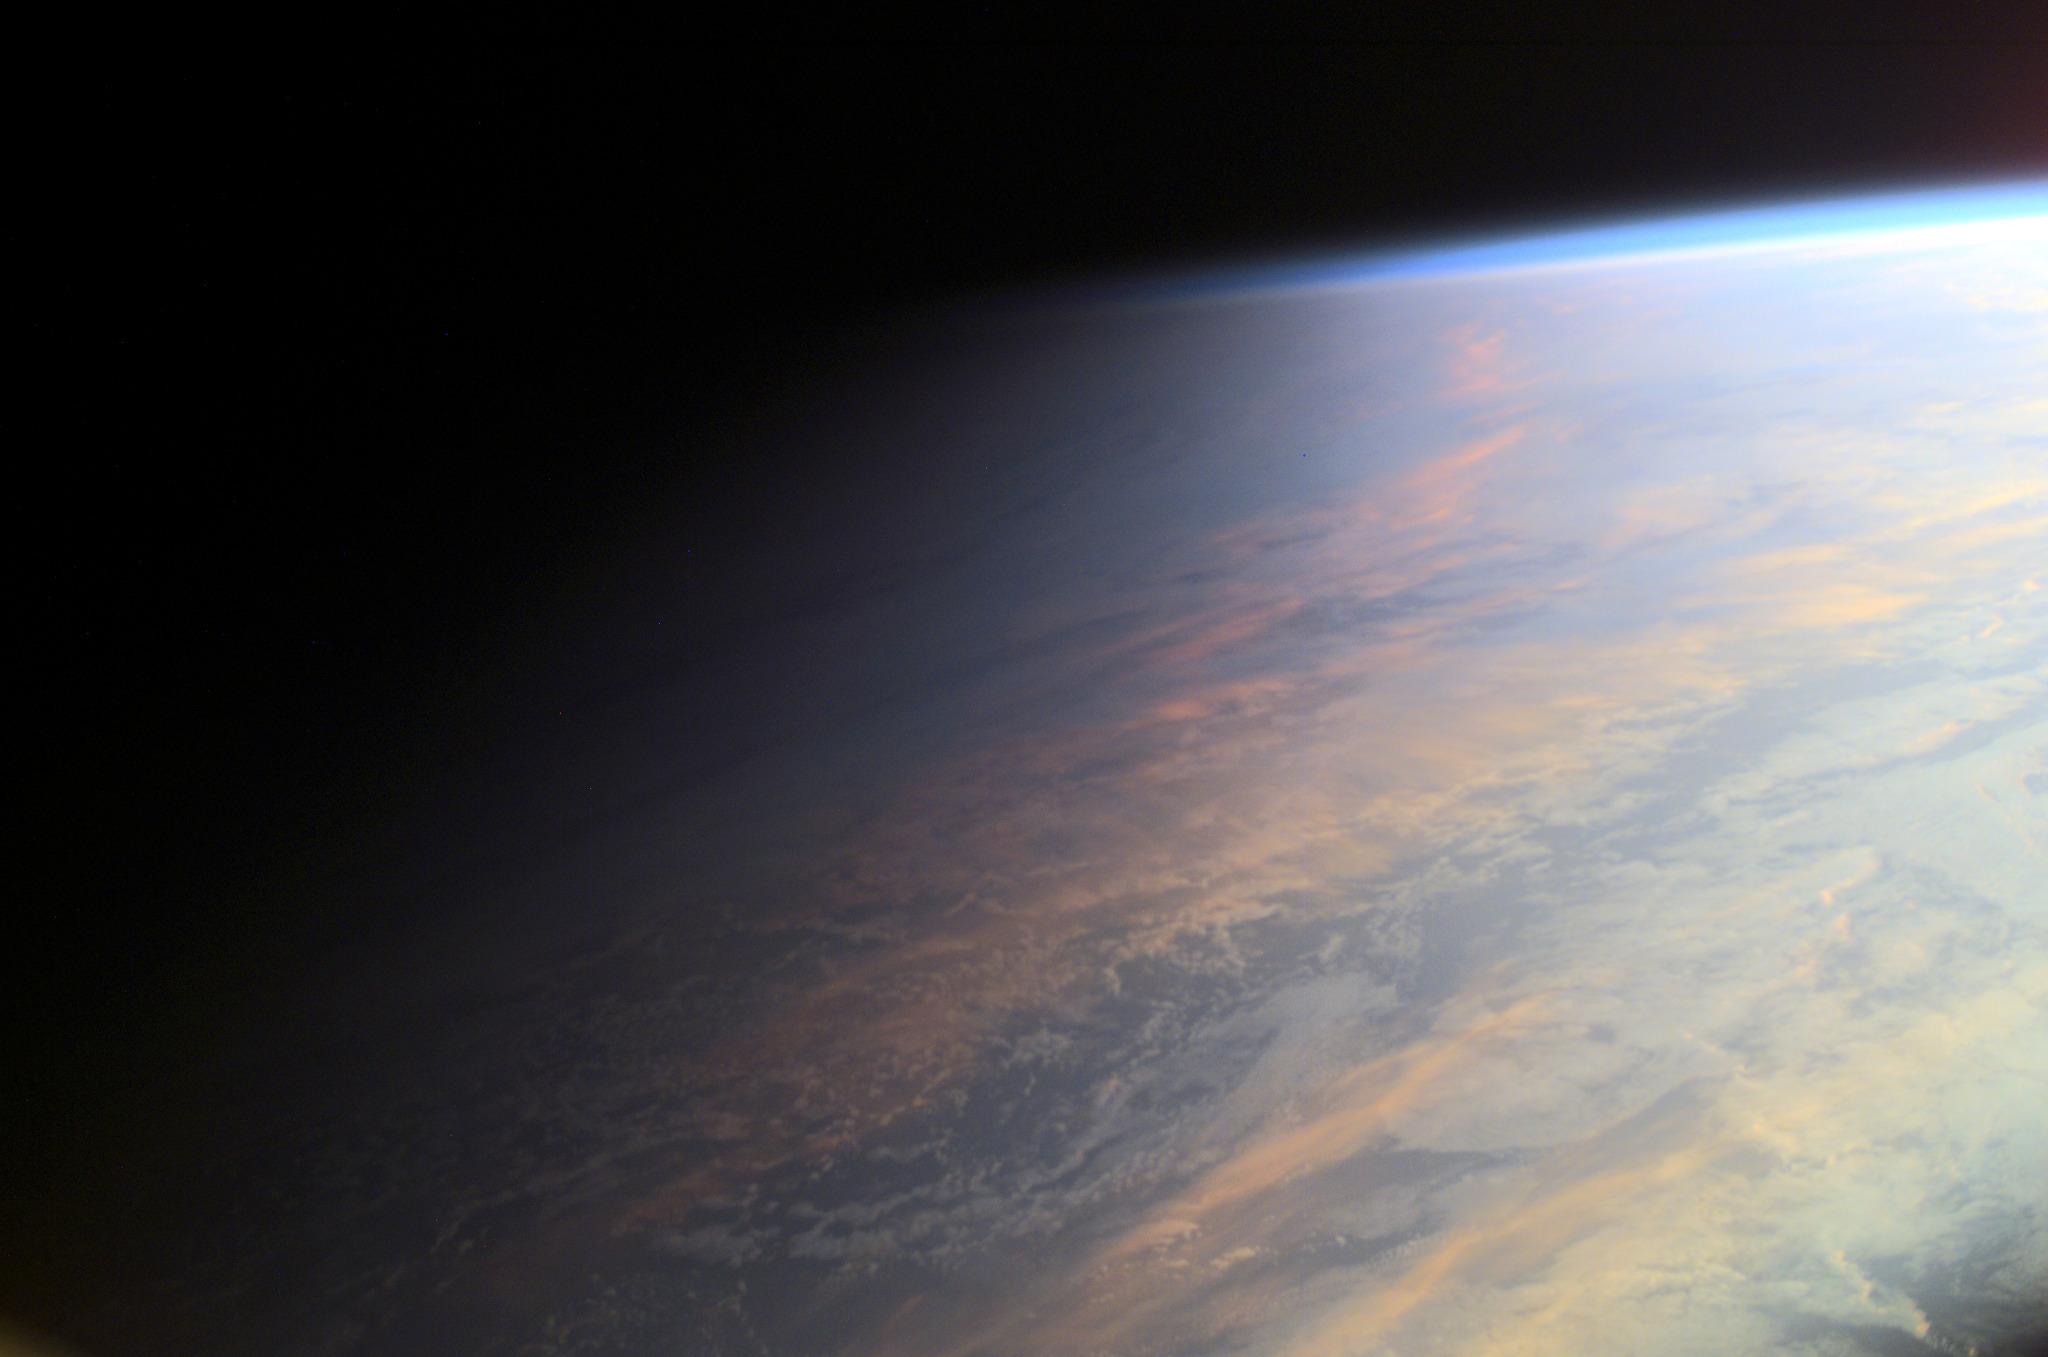 مقطع من الكرة الأرضيّة يُظهر الإنتقال التدريجي بين النهار يميناً والليل